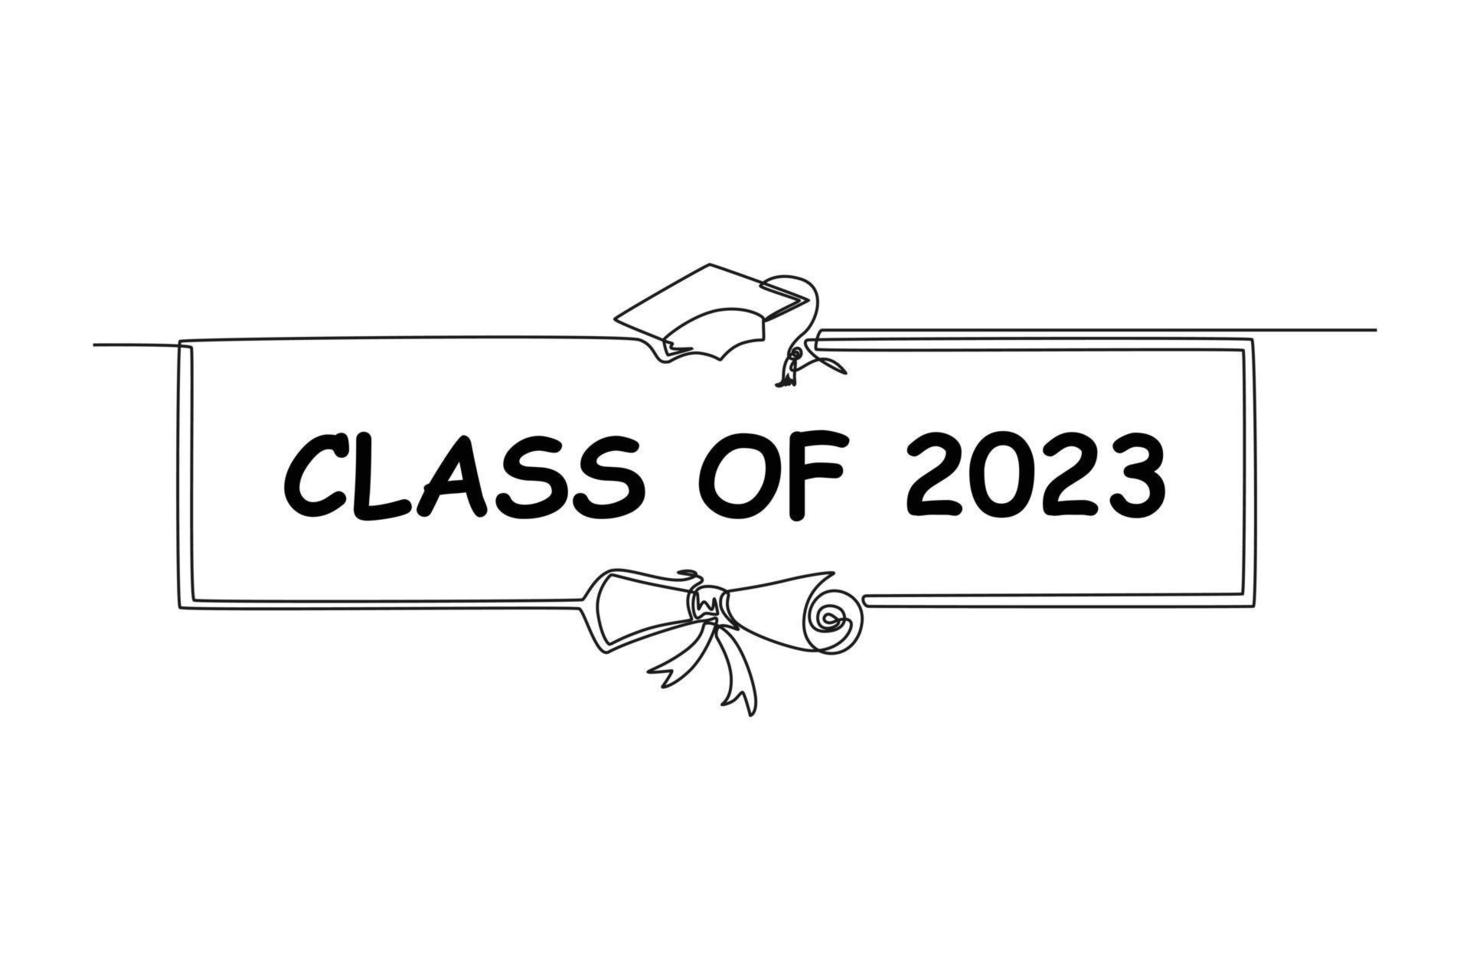 kontinuerlig en linje teckning lång ram klass av 2023. klass av 2023 begrepp enda linje drar design grafisk vektor illustration